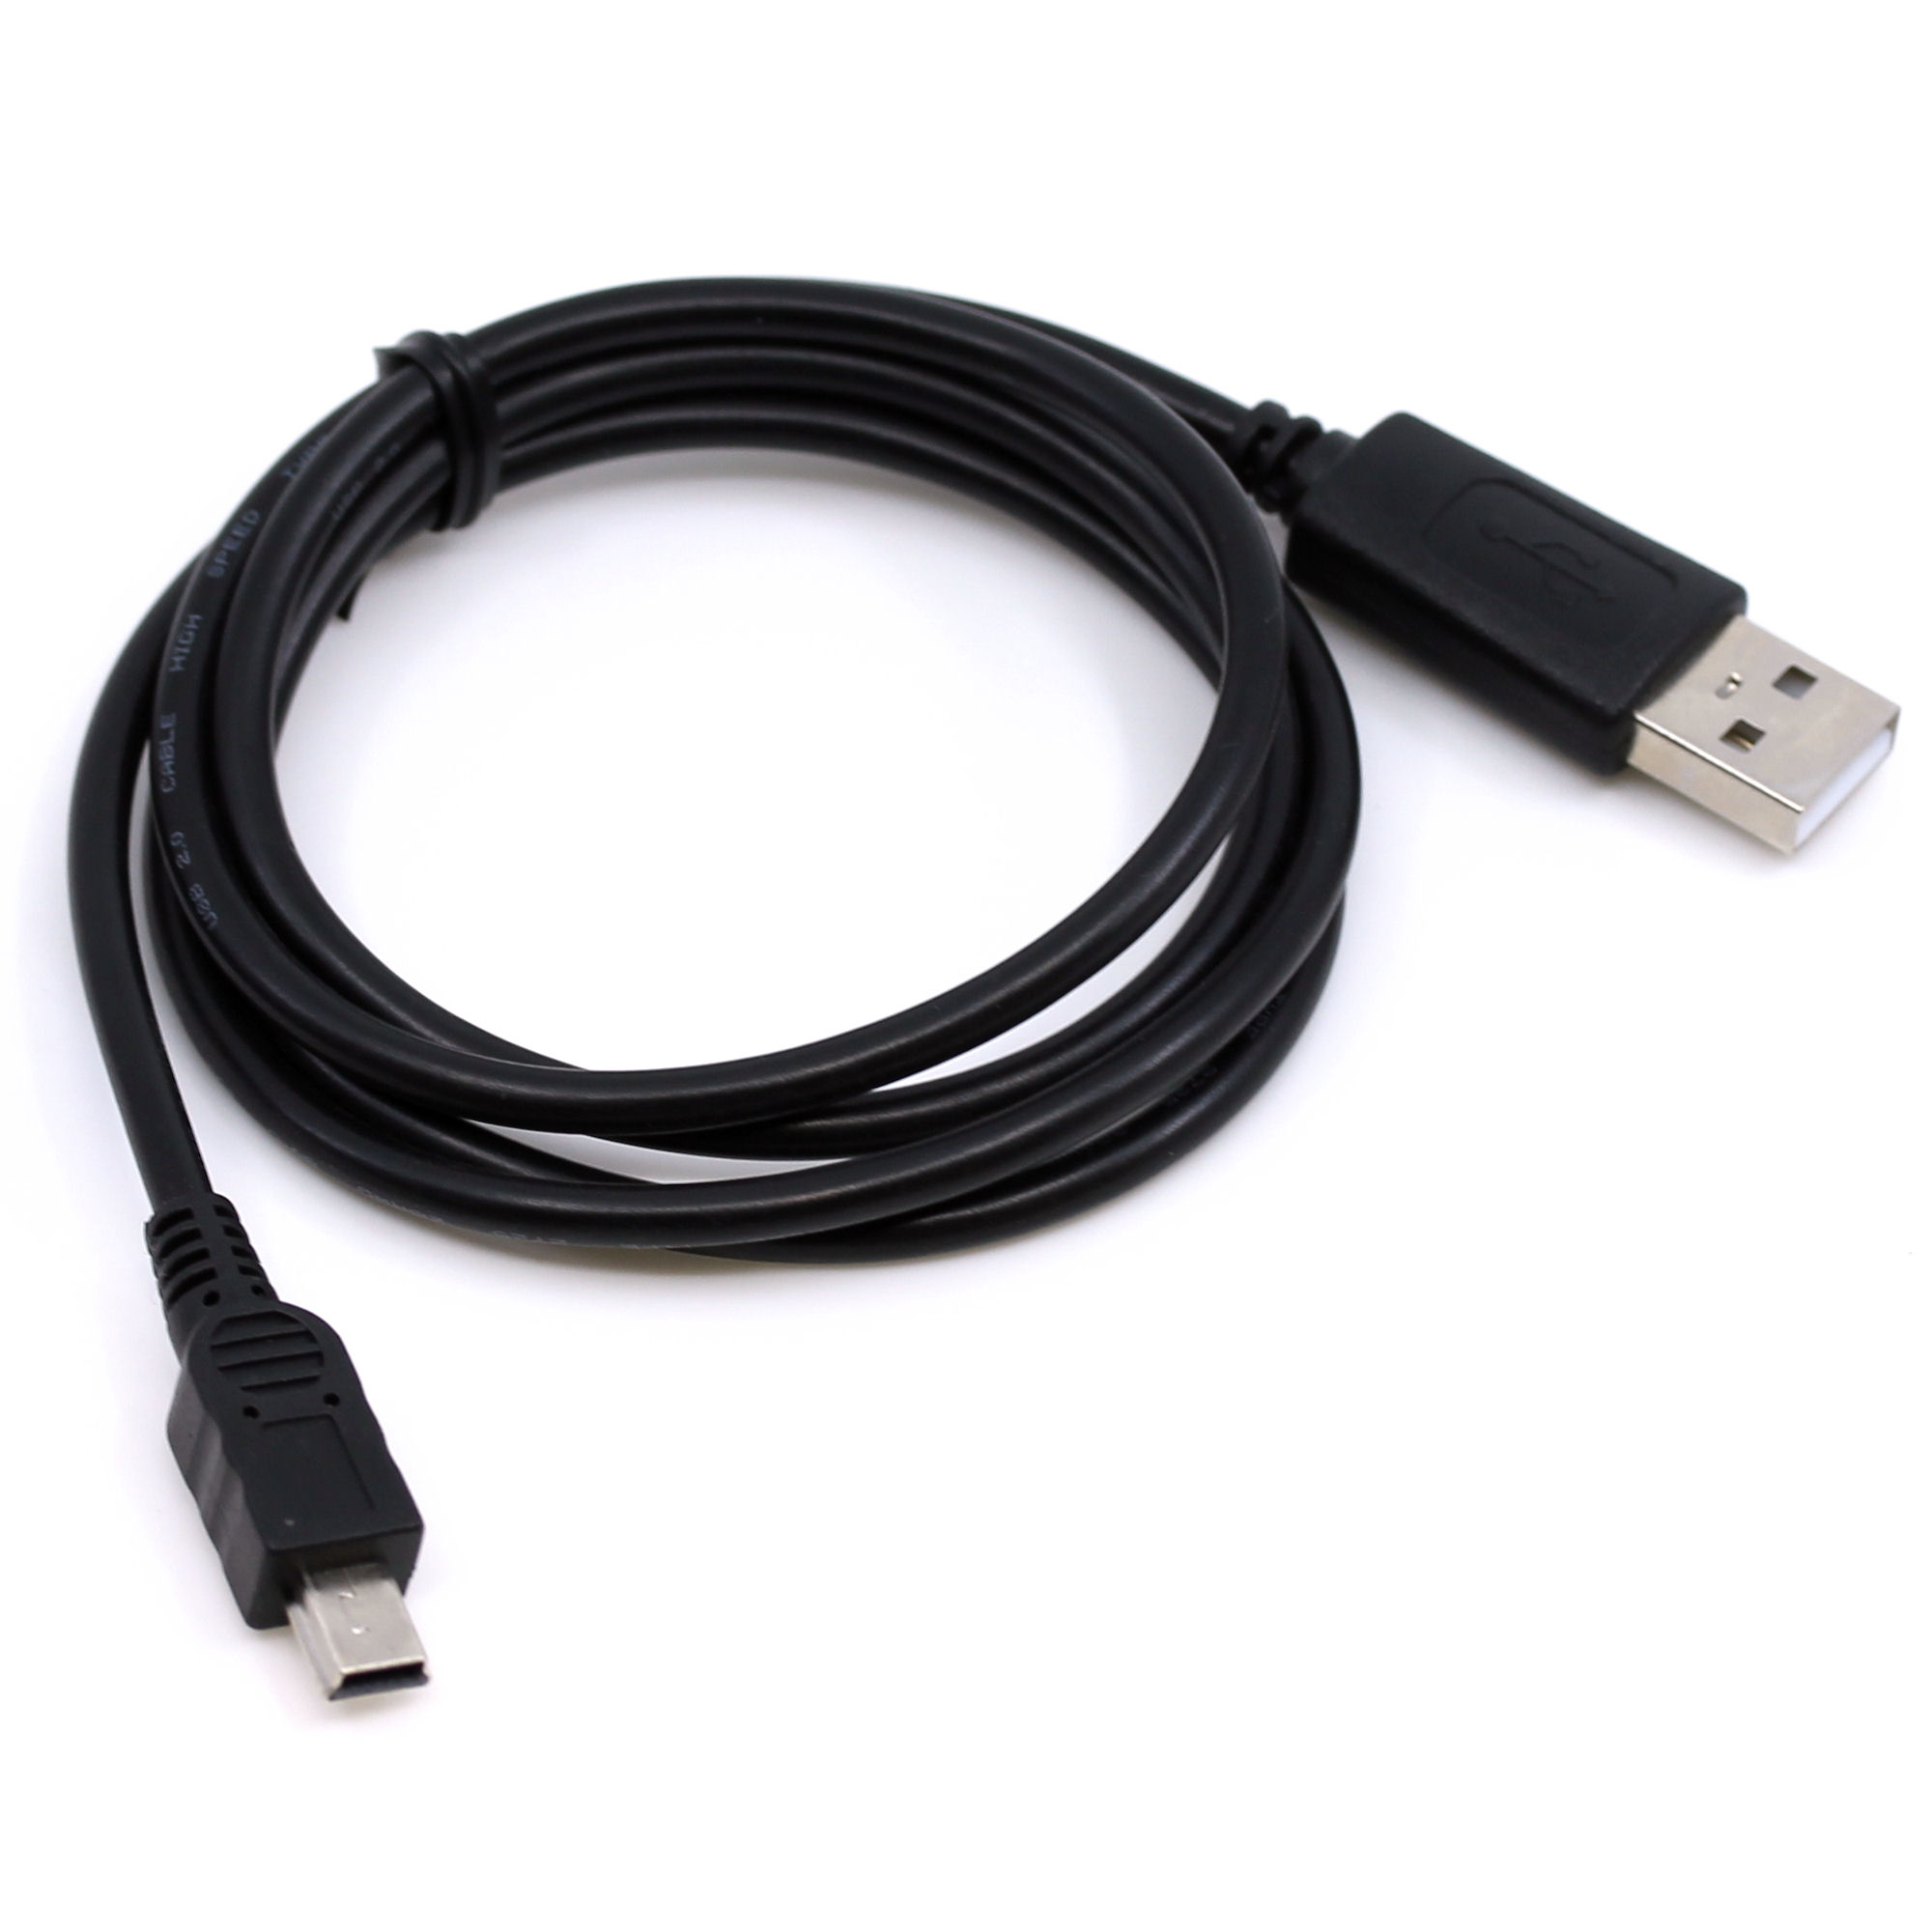 USB Datenkabel für JVC GR-DVP7, GR-DVP7U, GR-DVX507, GR-DX300, GR-DX307, GR-DX75, GR-DX77, GR-DX95